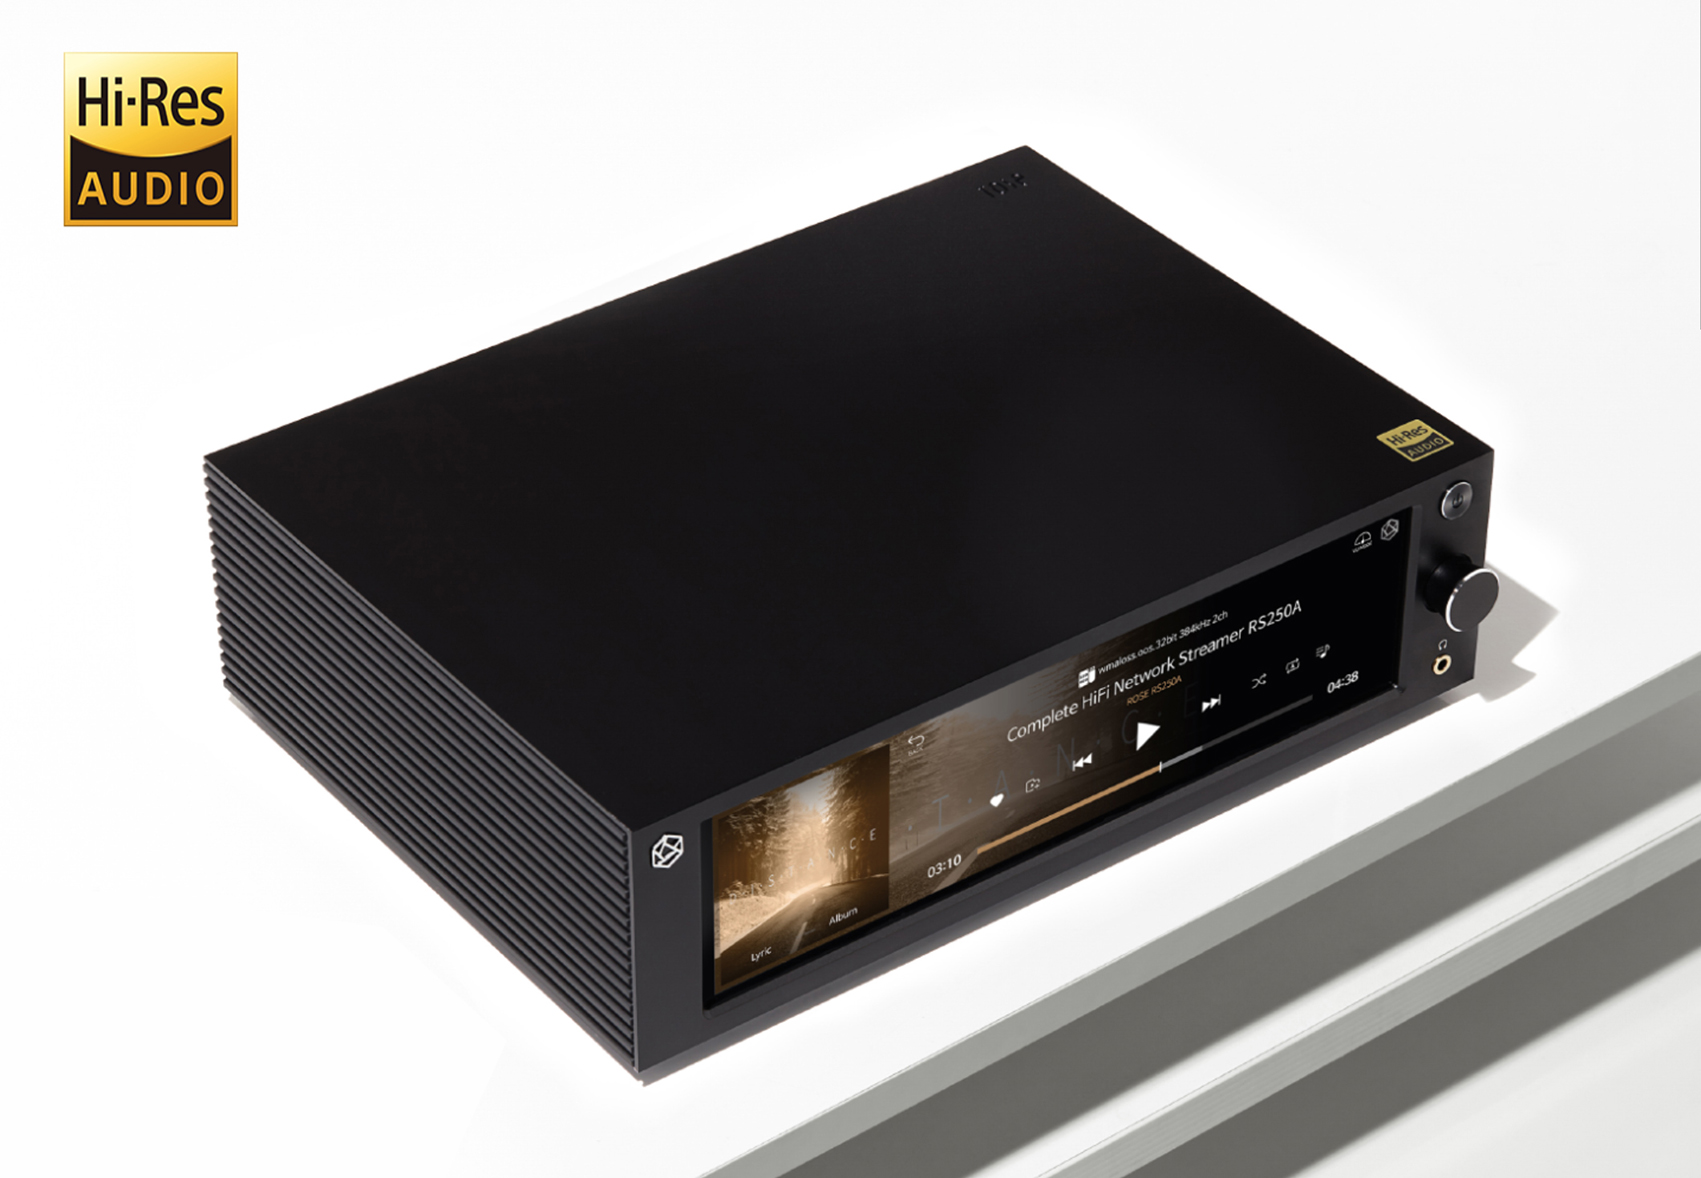 HiFi Rose RS250A mrežni streamer - poboljšanje za budućnost